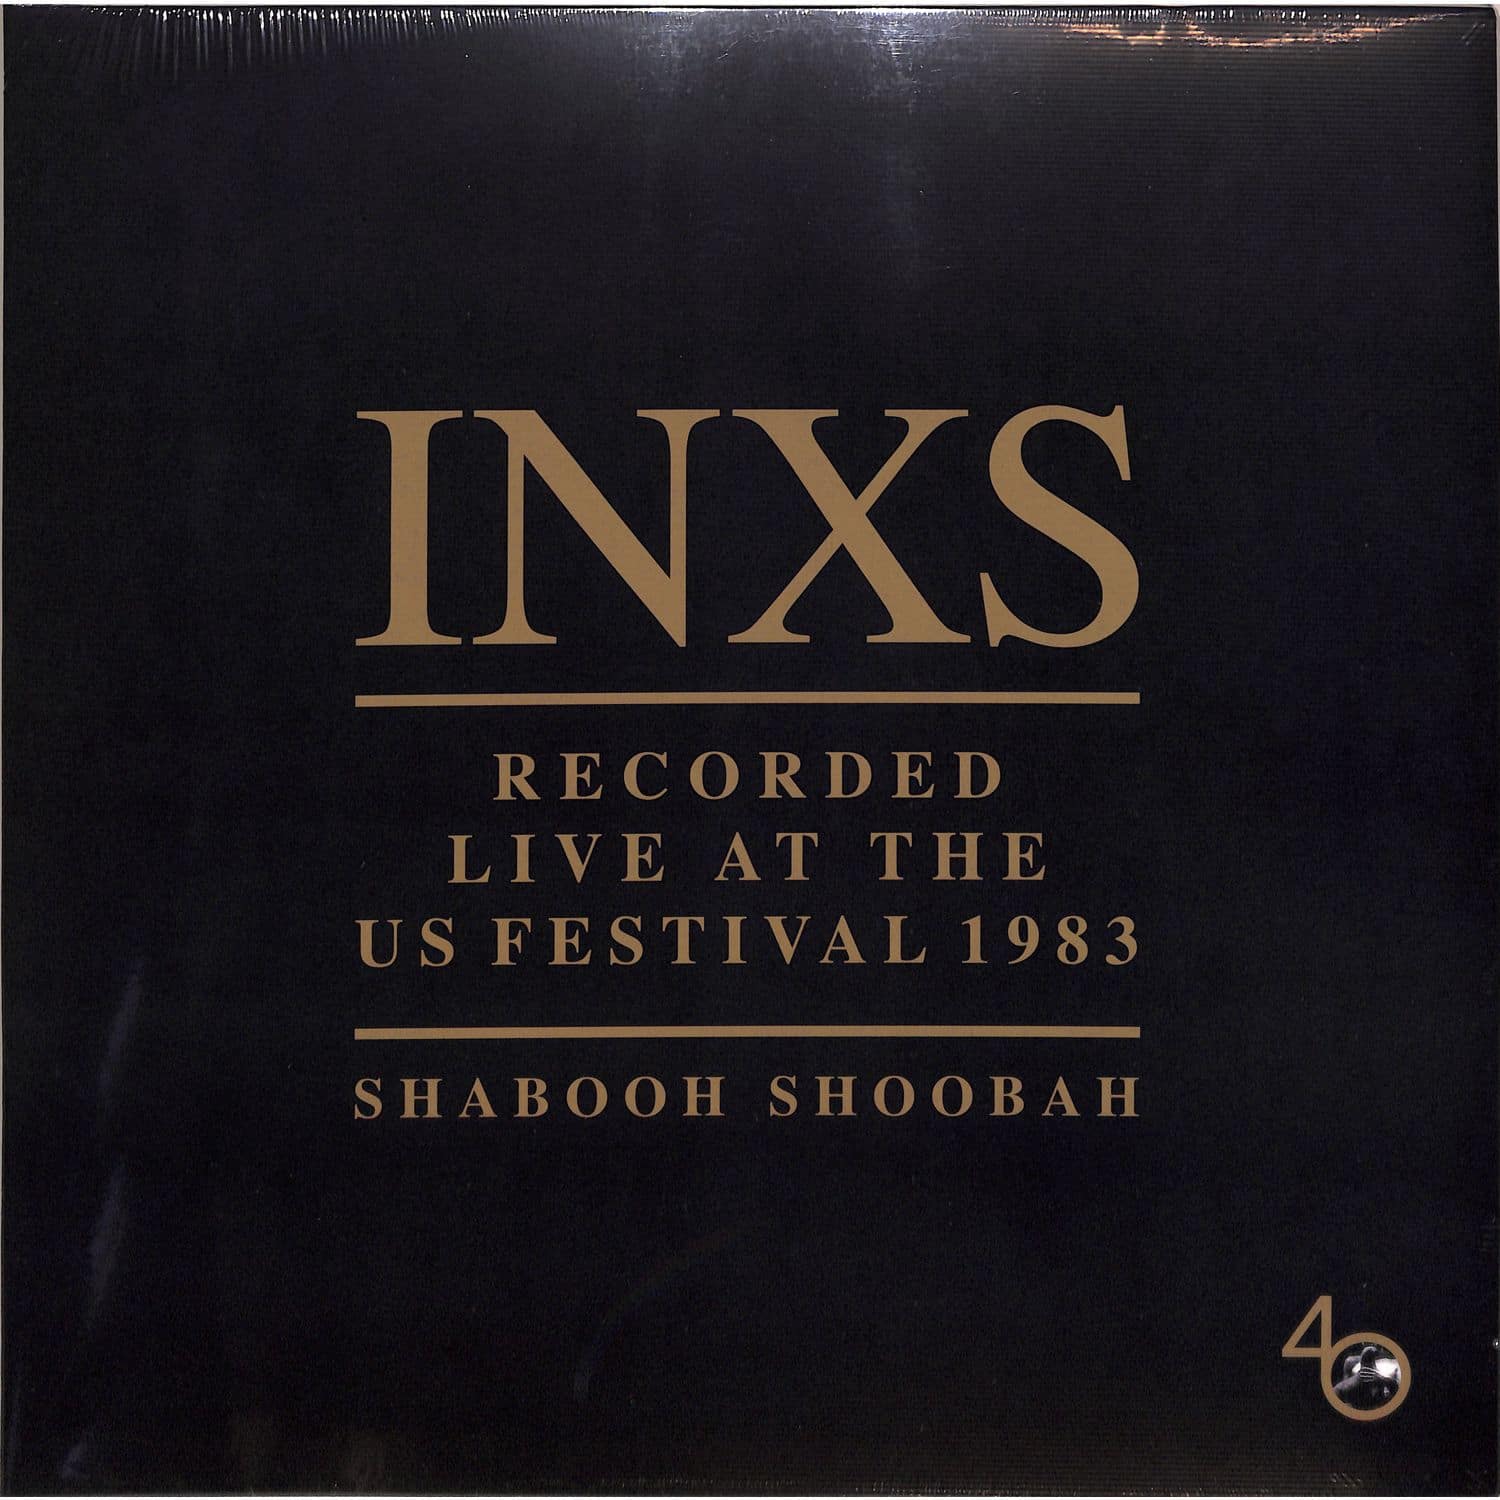 INXS - SHABOOH SHOOBAH 